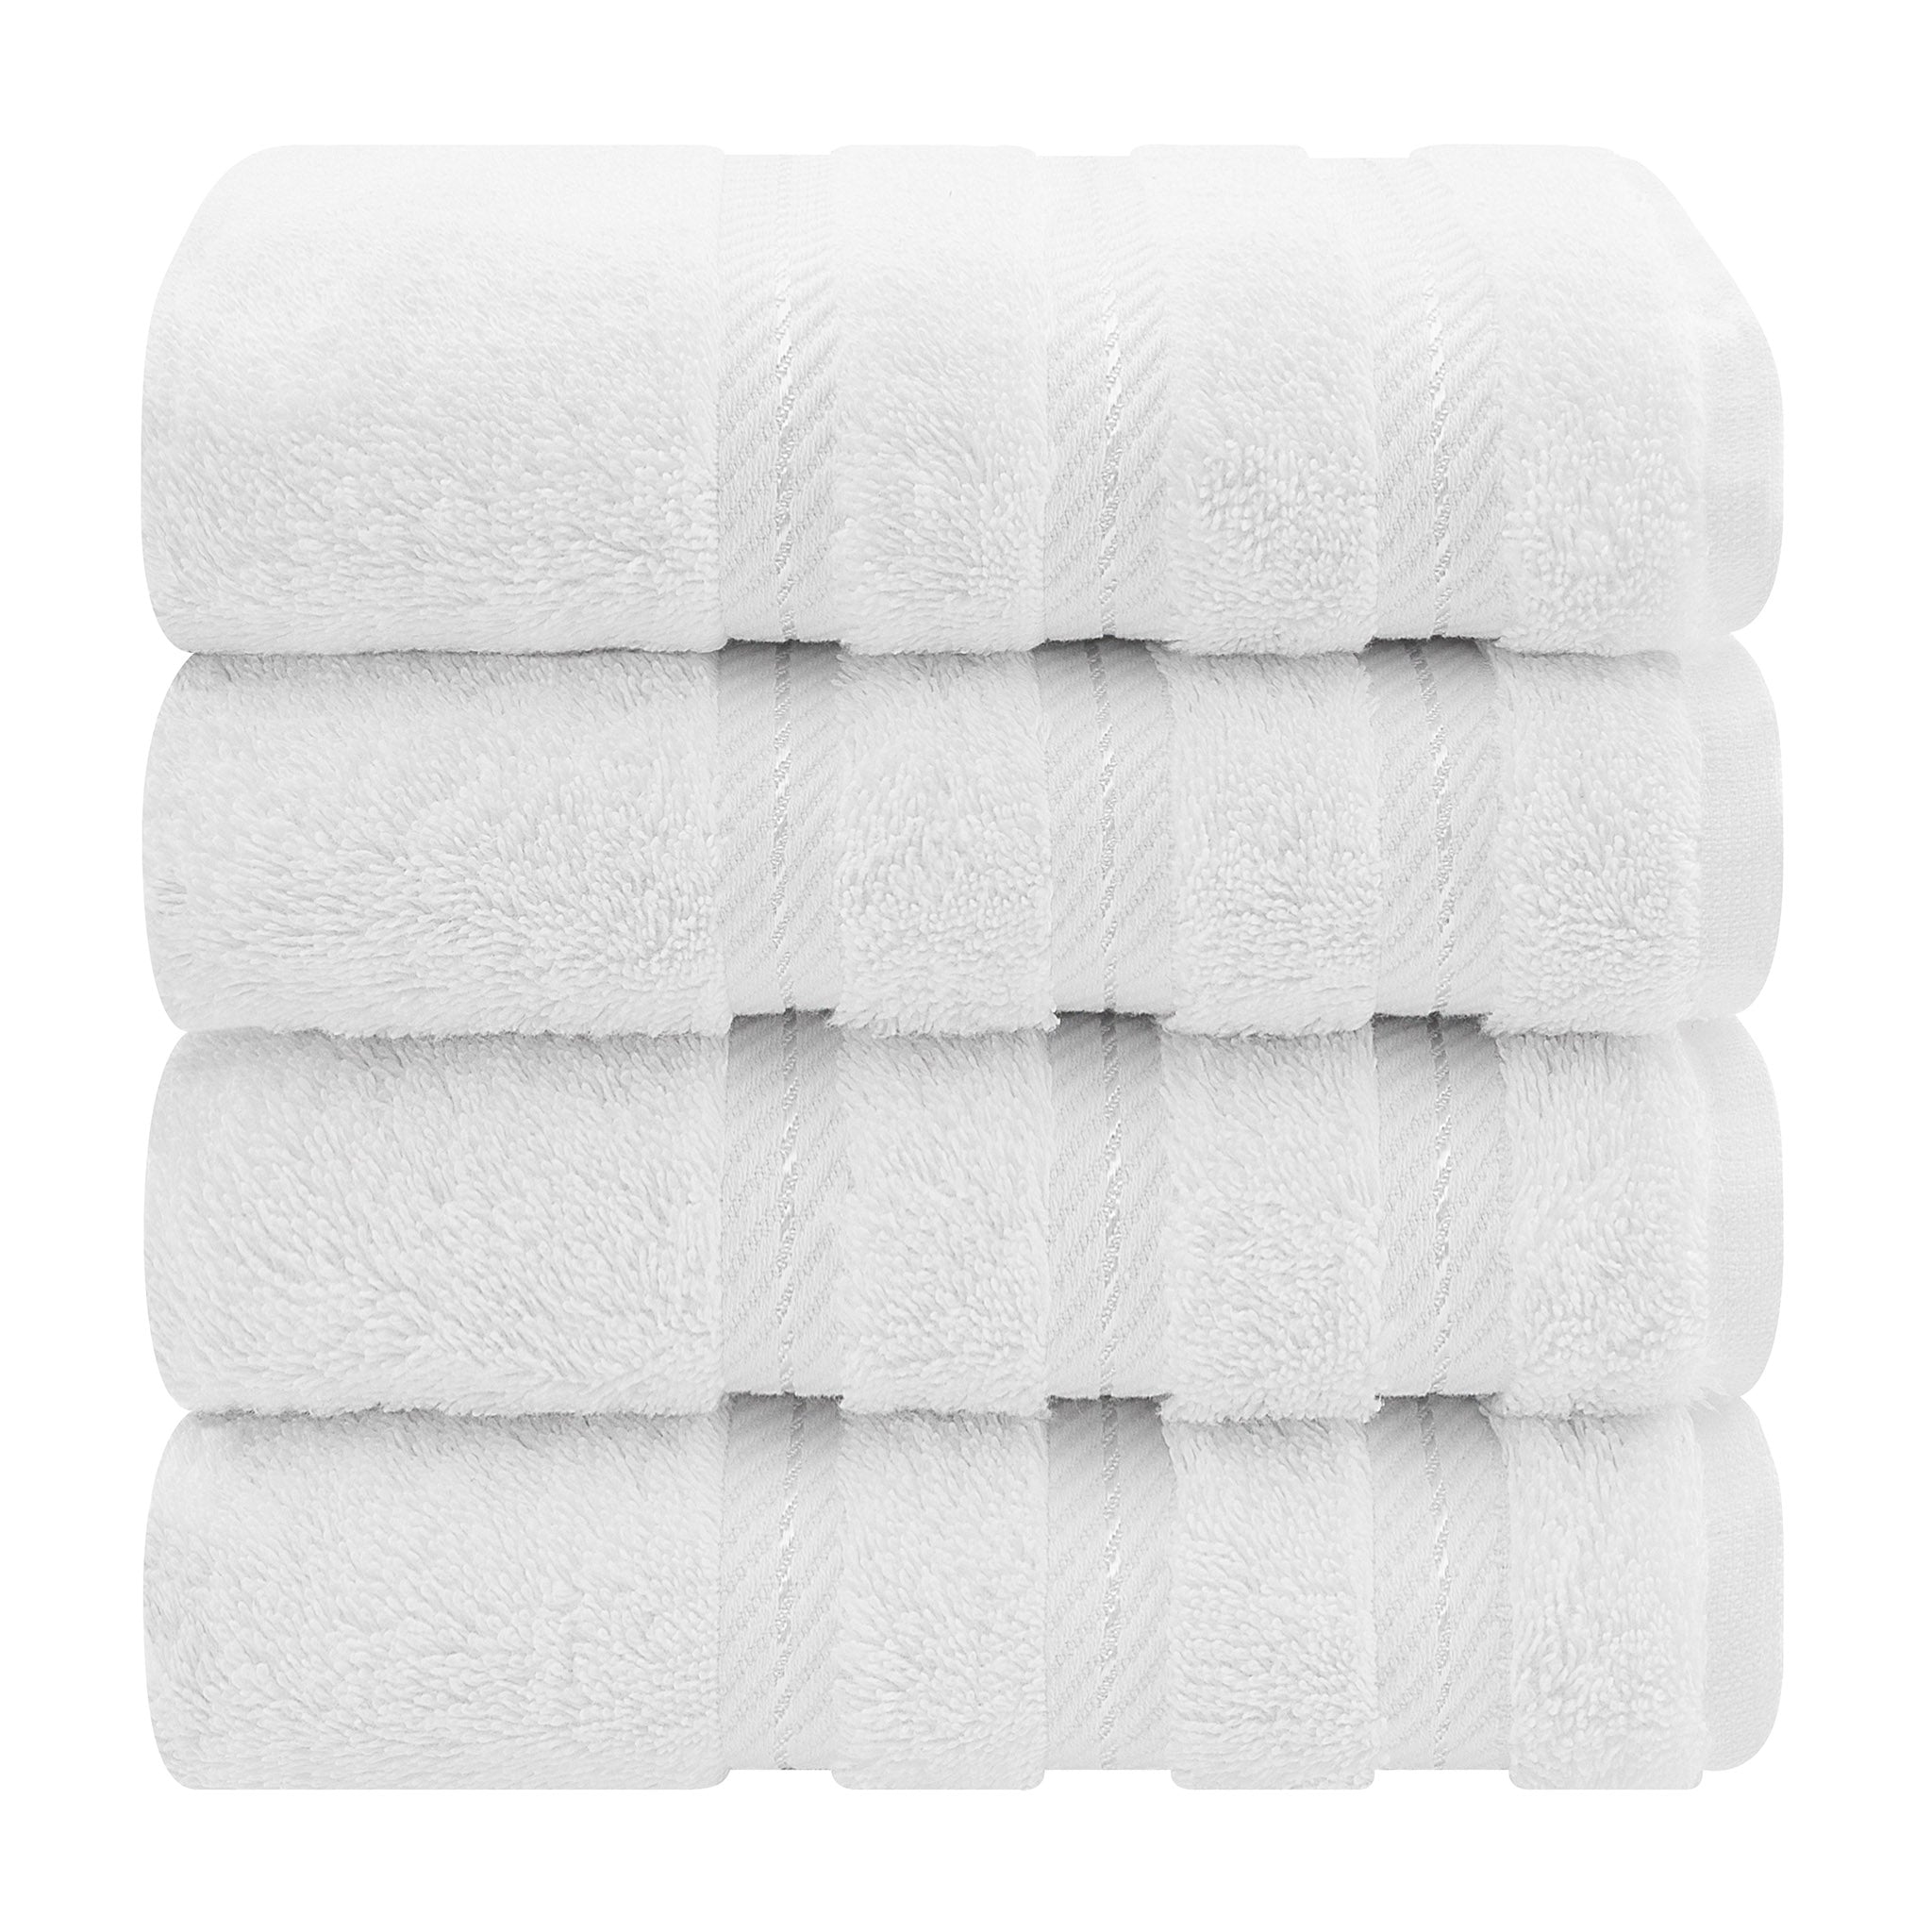 https://americansoftlinen.com/cdn/shop/files/american-soft-linen-4-pack-hand-towel-set-white-7.jpg?v=1698068061&width=2048